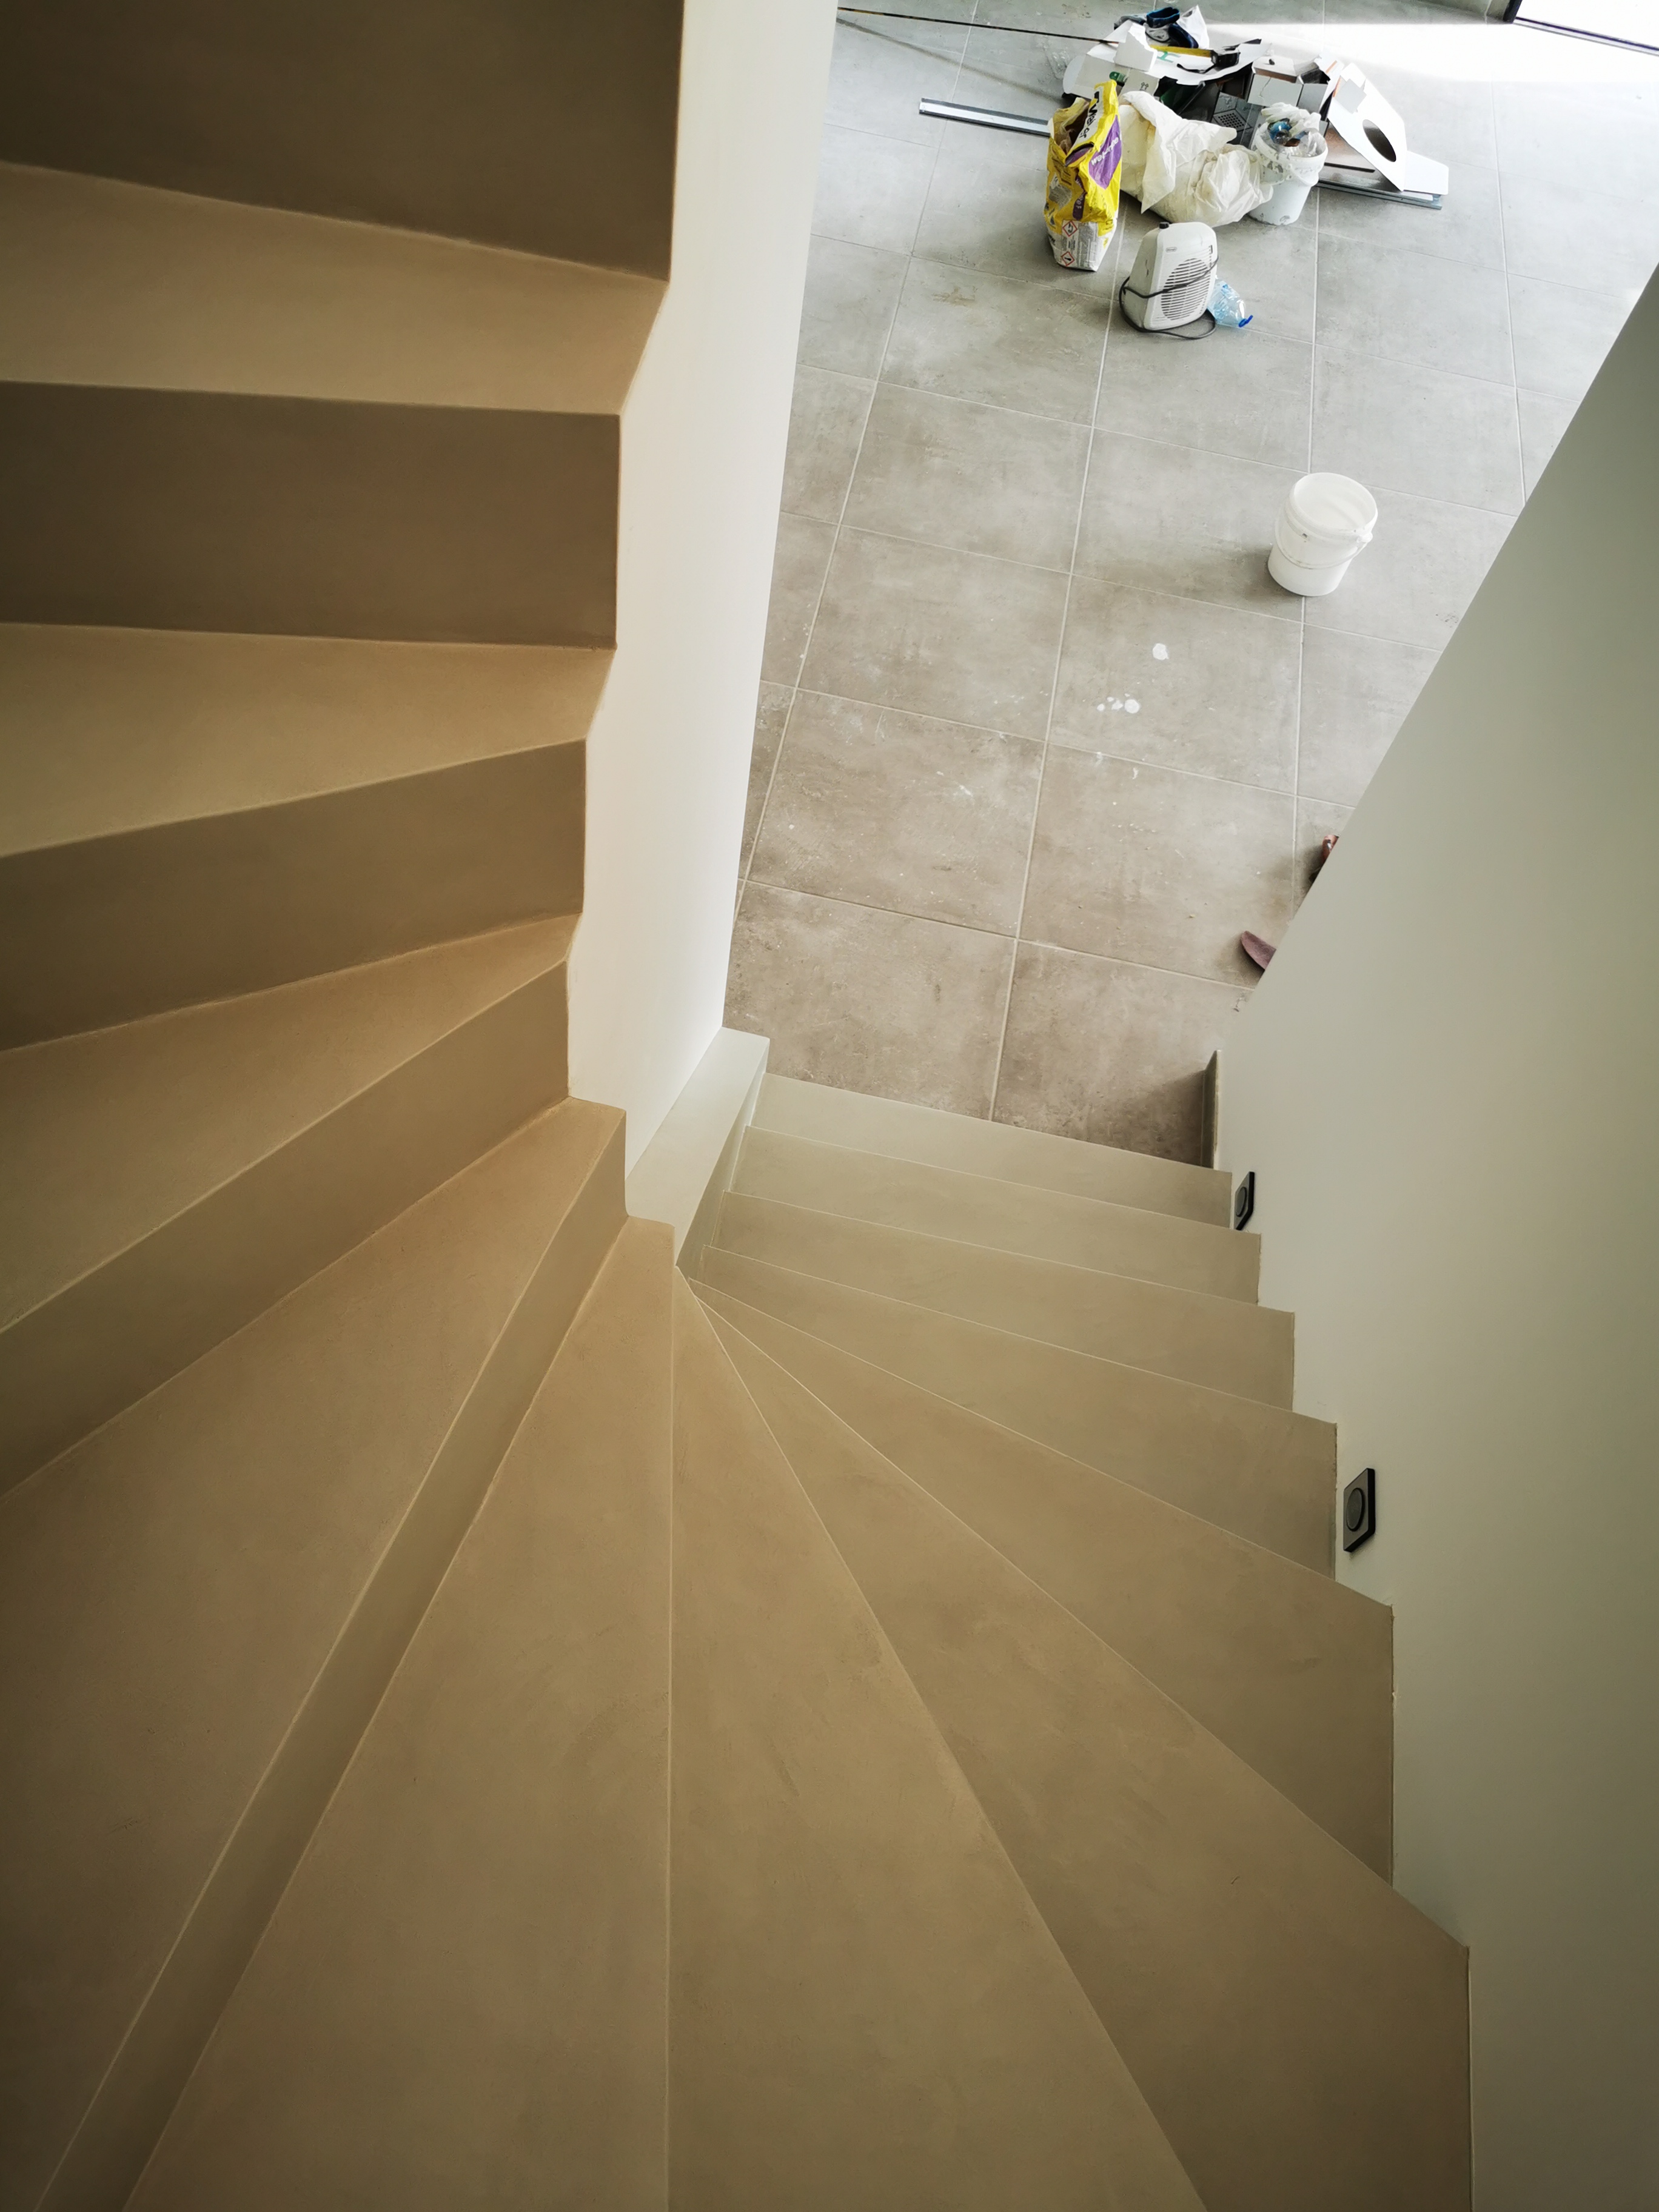 décoration marches d'un escalier à paillasse en béton ciré vernis mat couleur poivre blanc A Saint-Médard proche de Bordeaux en Aquitaine pour un constructeur